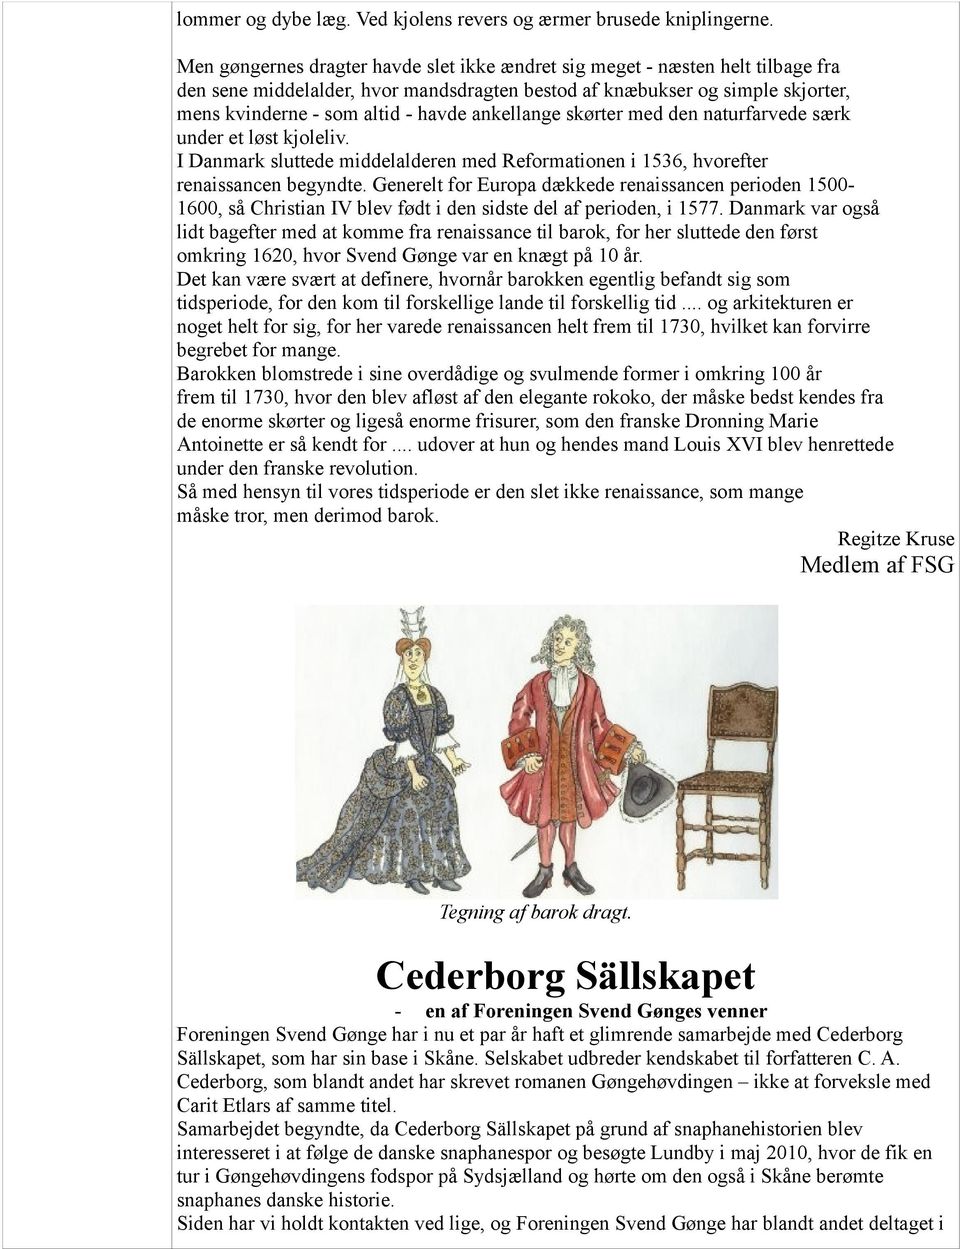 ankellange skørter med den naturfarvede særk under et løst kjoleliv. I Danmark sluttede middelalderen med Reformationen i 1536, hvorefter renaissancen begyndte.